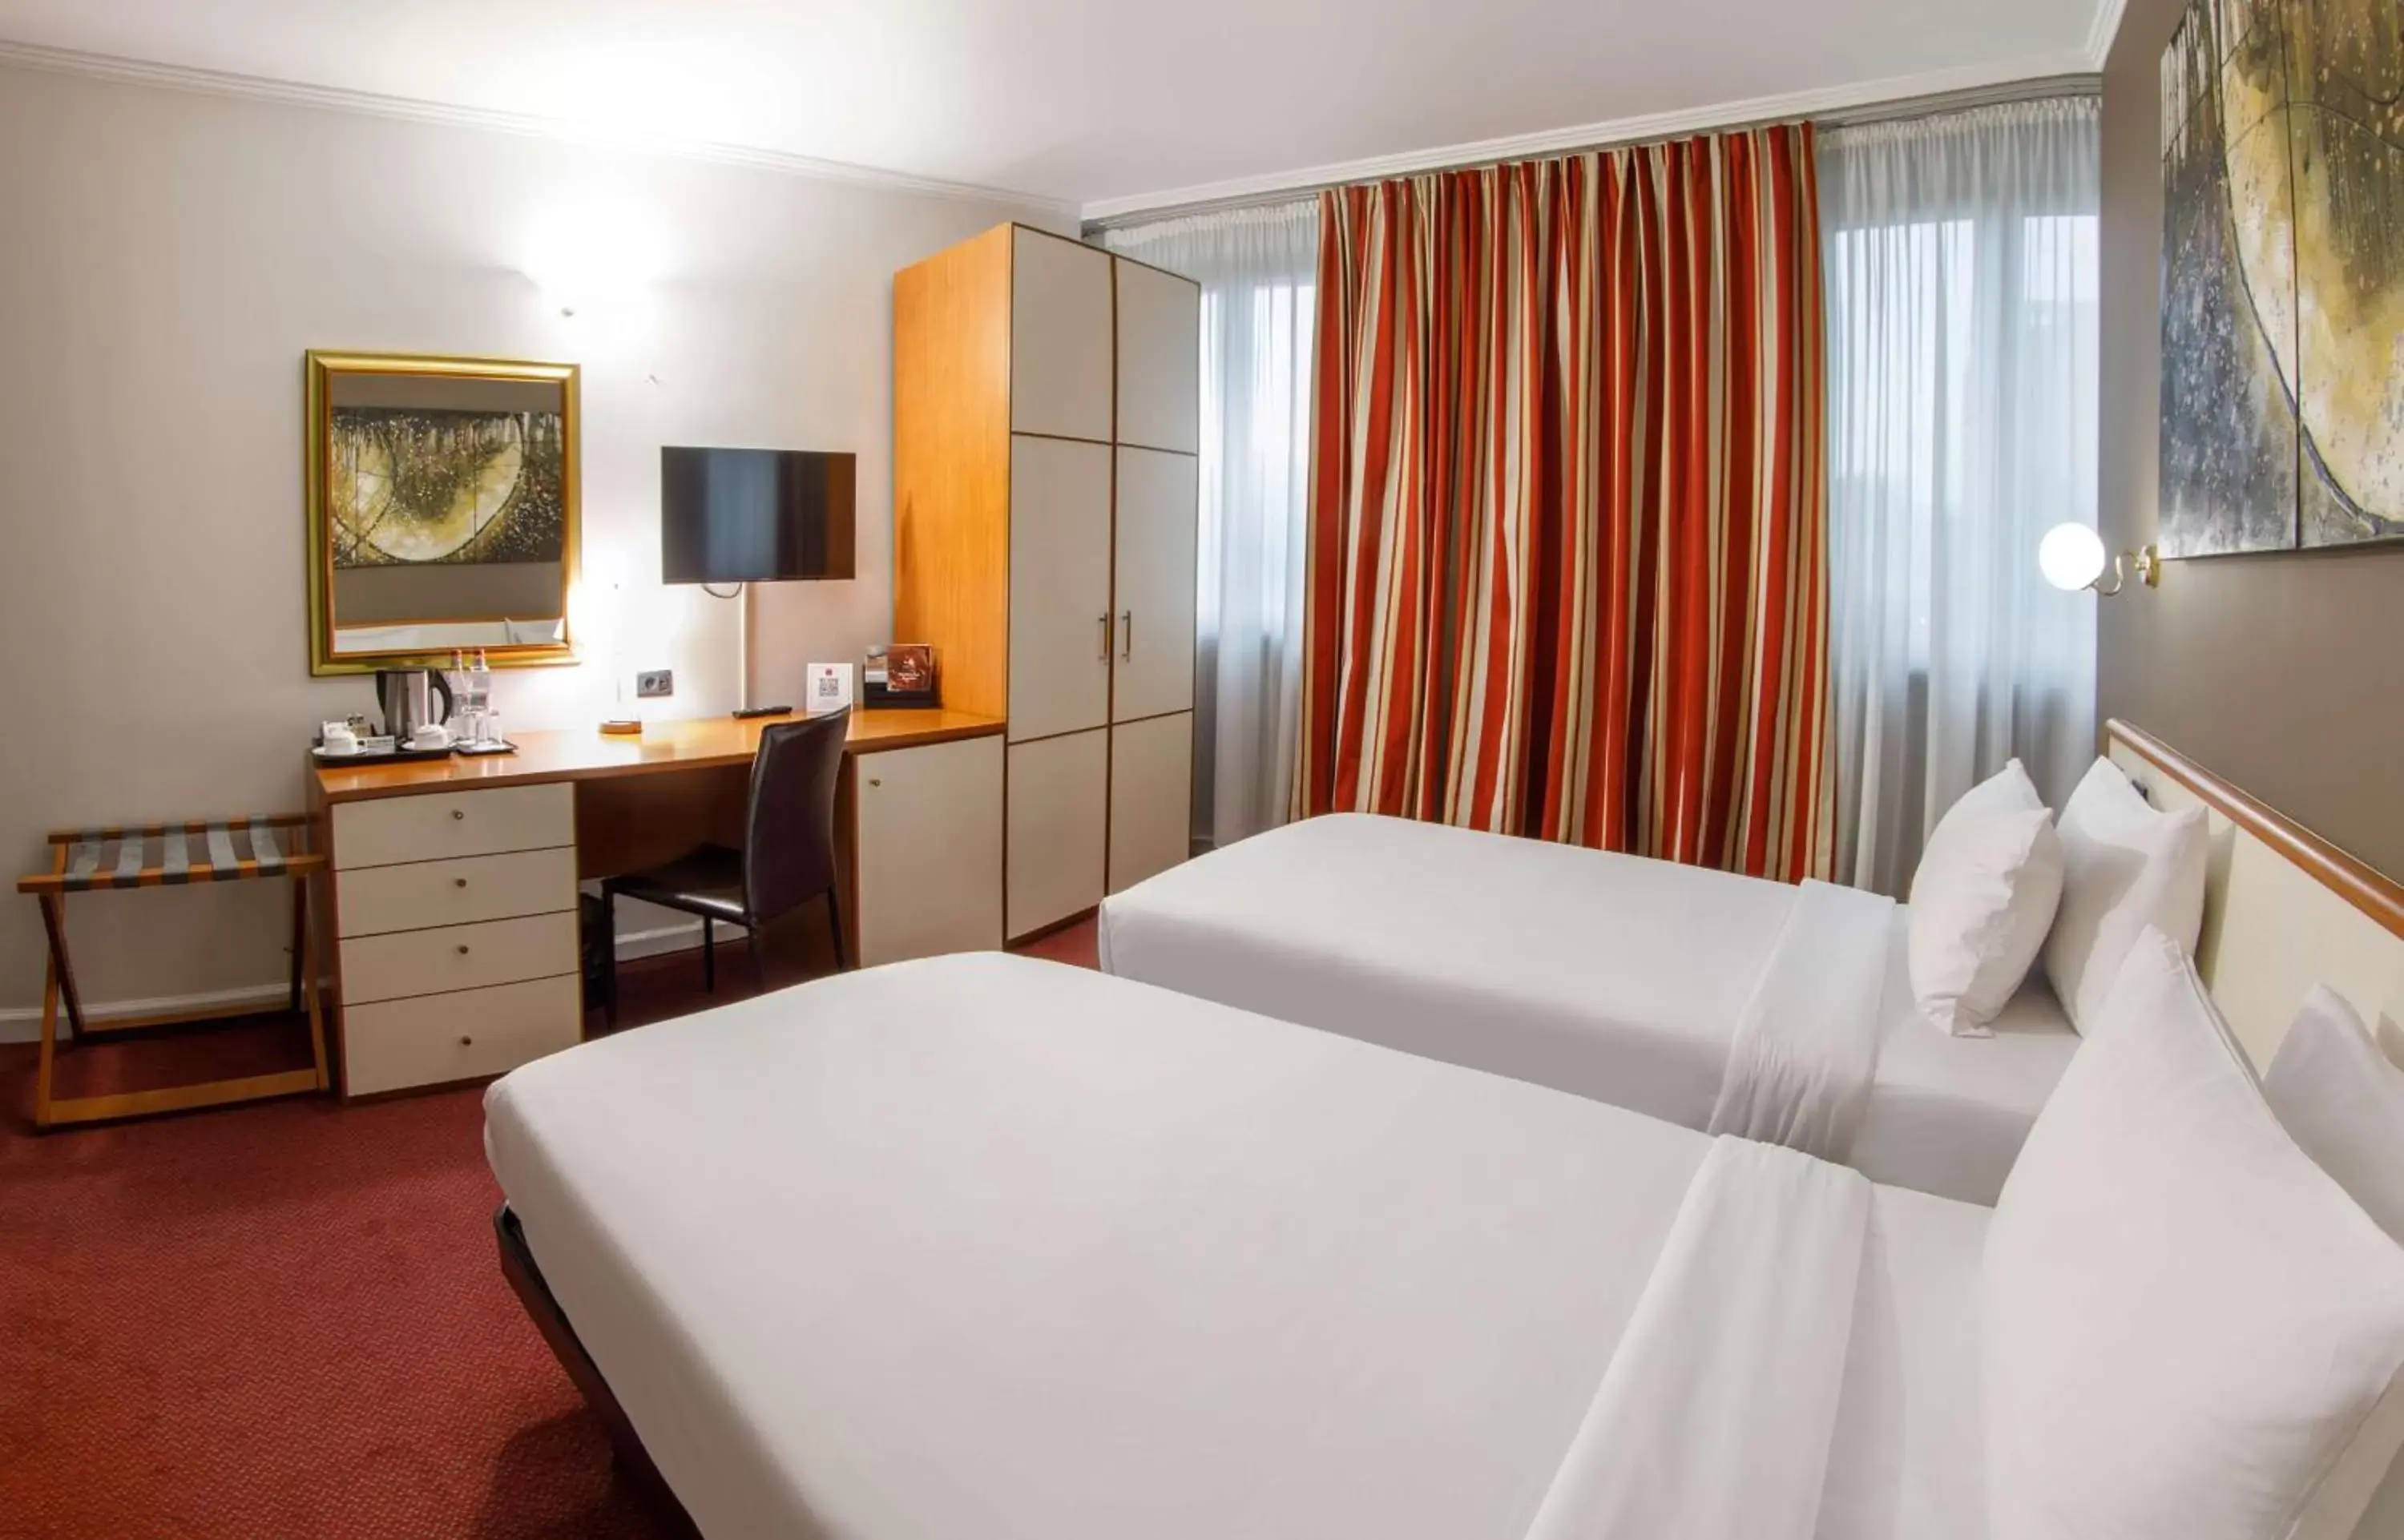 Bedroom, Bed in Best Western Plus Congress Hotel Yerevan